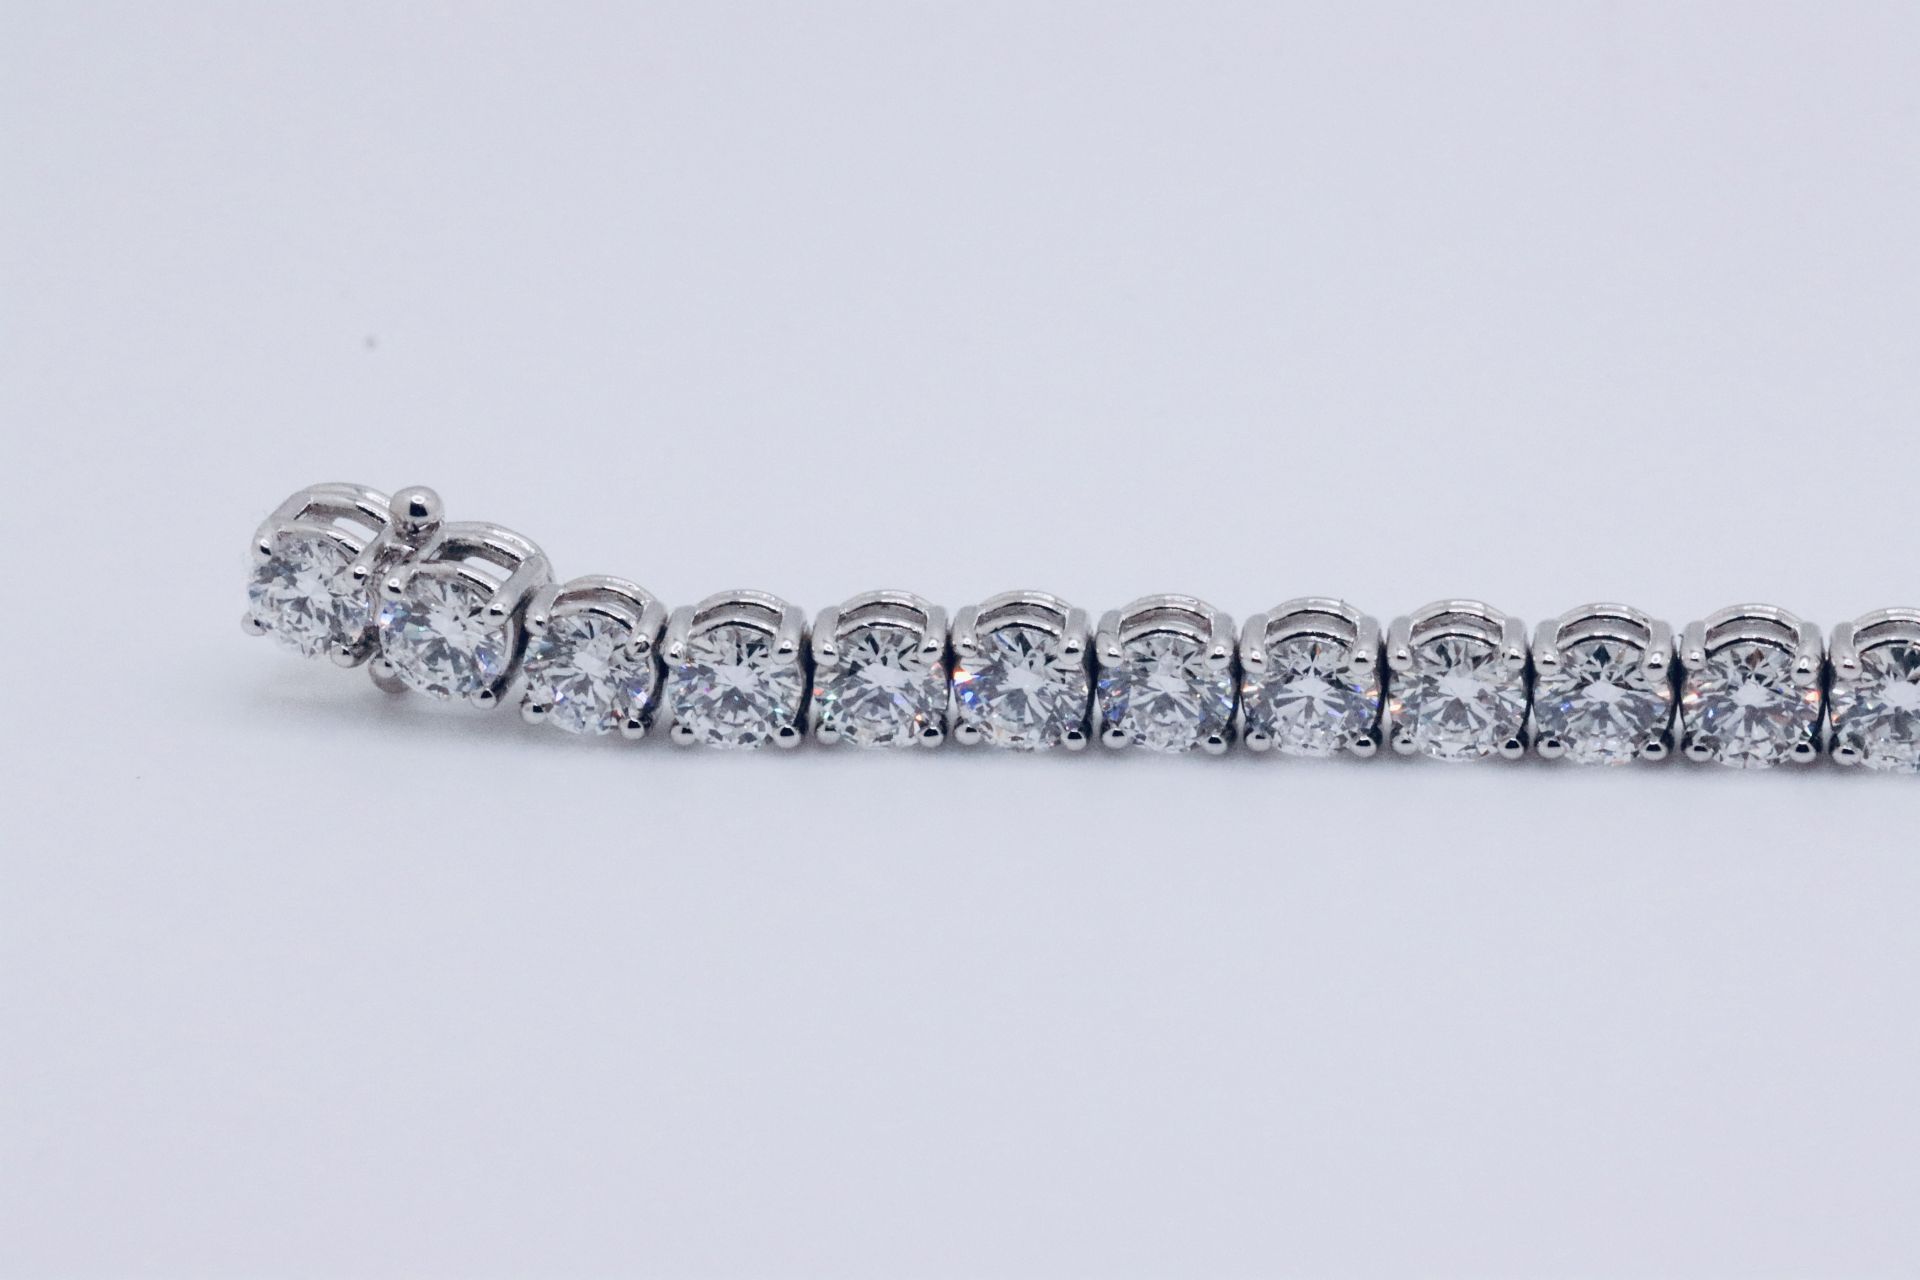 Round Brilliant Cut 14 Carat Diamond Tennis Bracelet D Colour VVS Clarity - 18Kt White Gold - IGI - Image 5 of 7